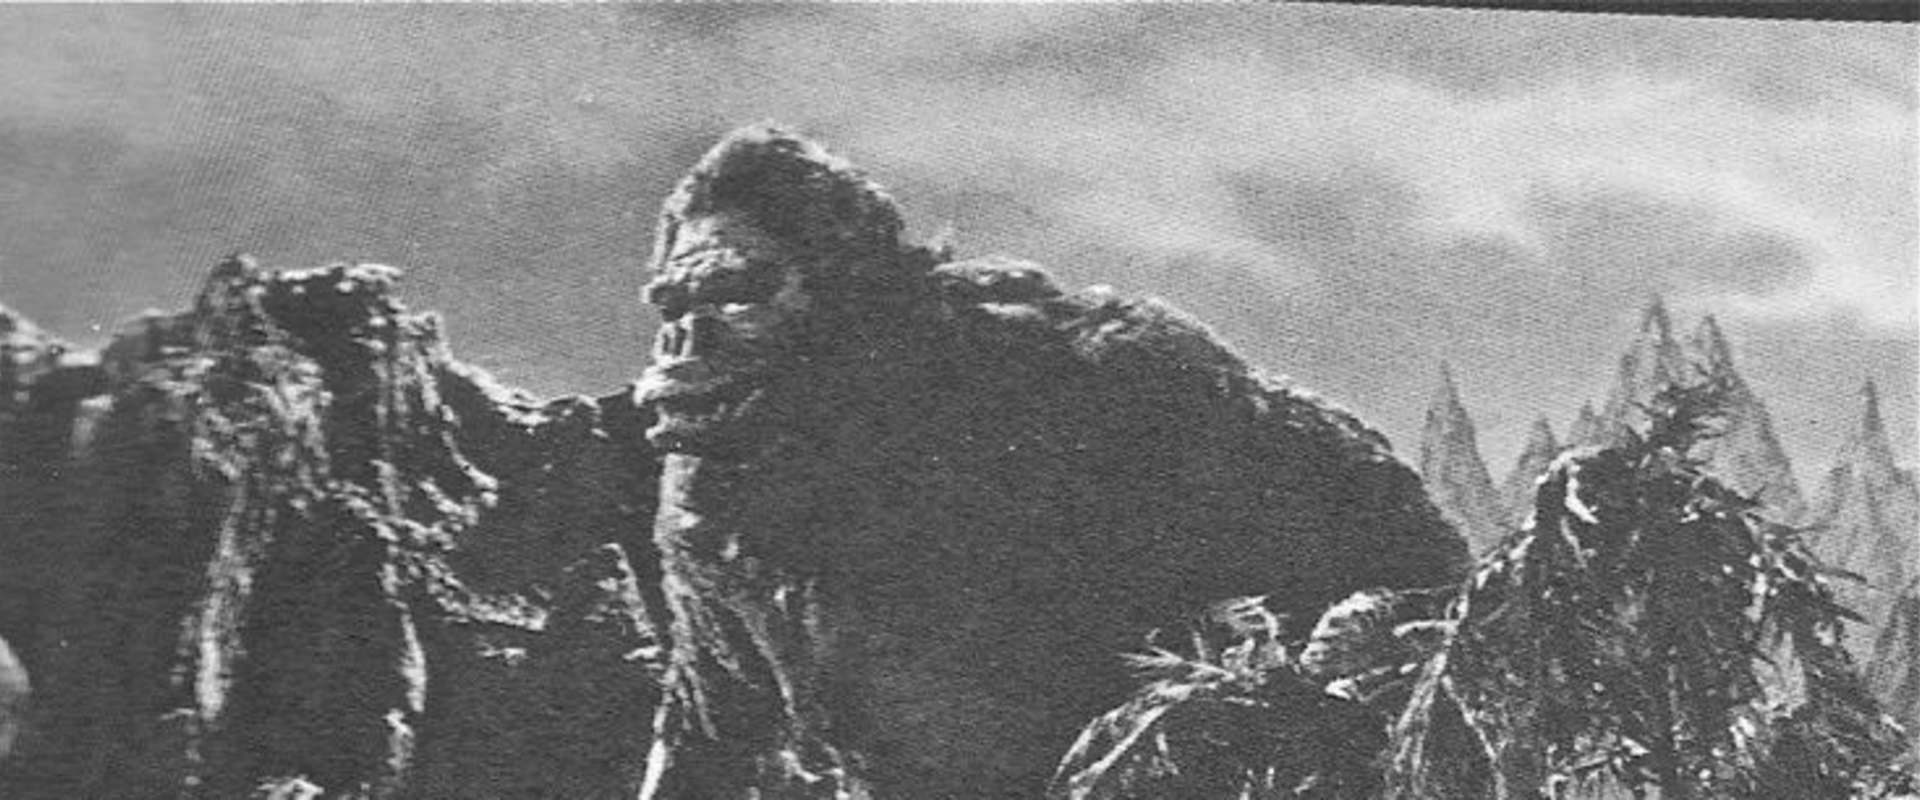 King Kong vs. Godzilla background 2